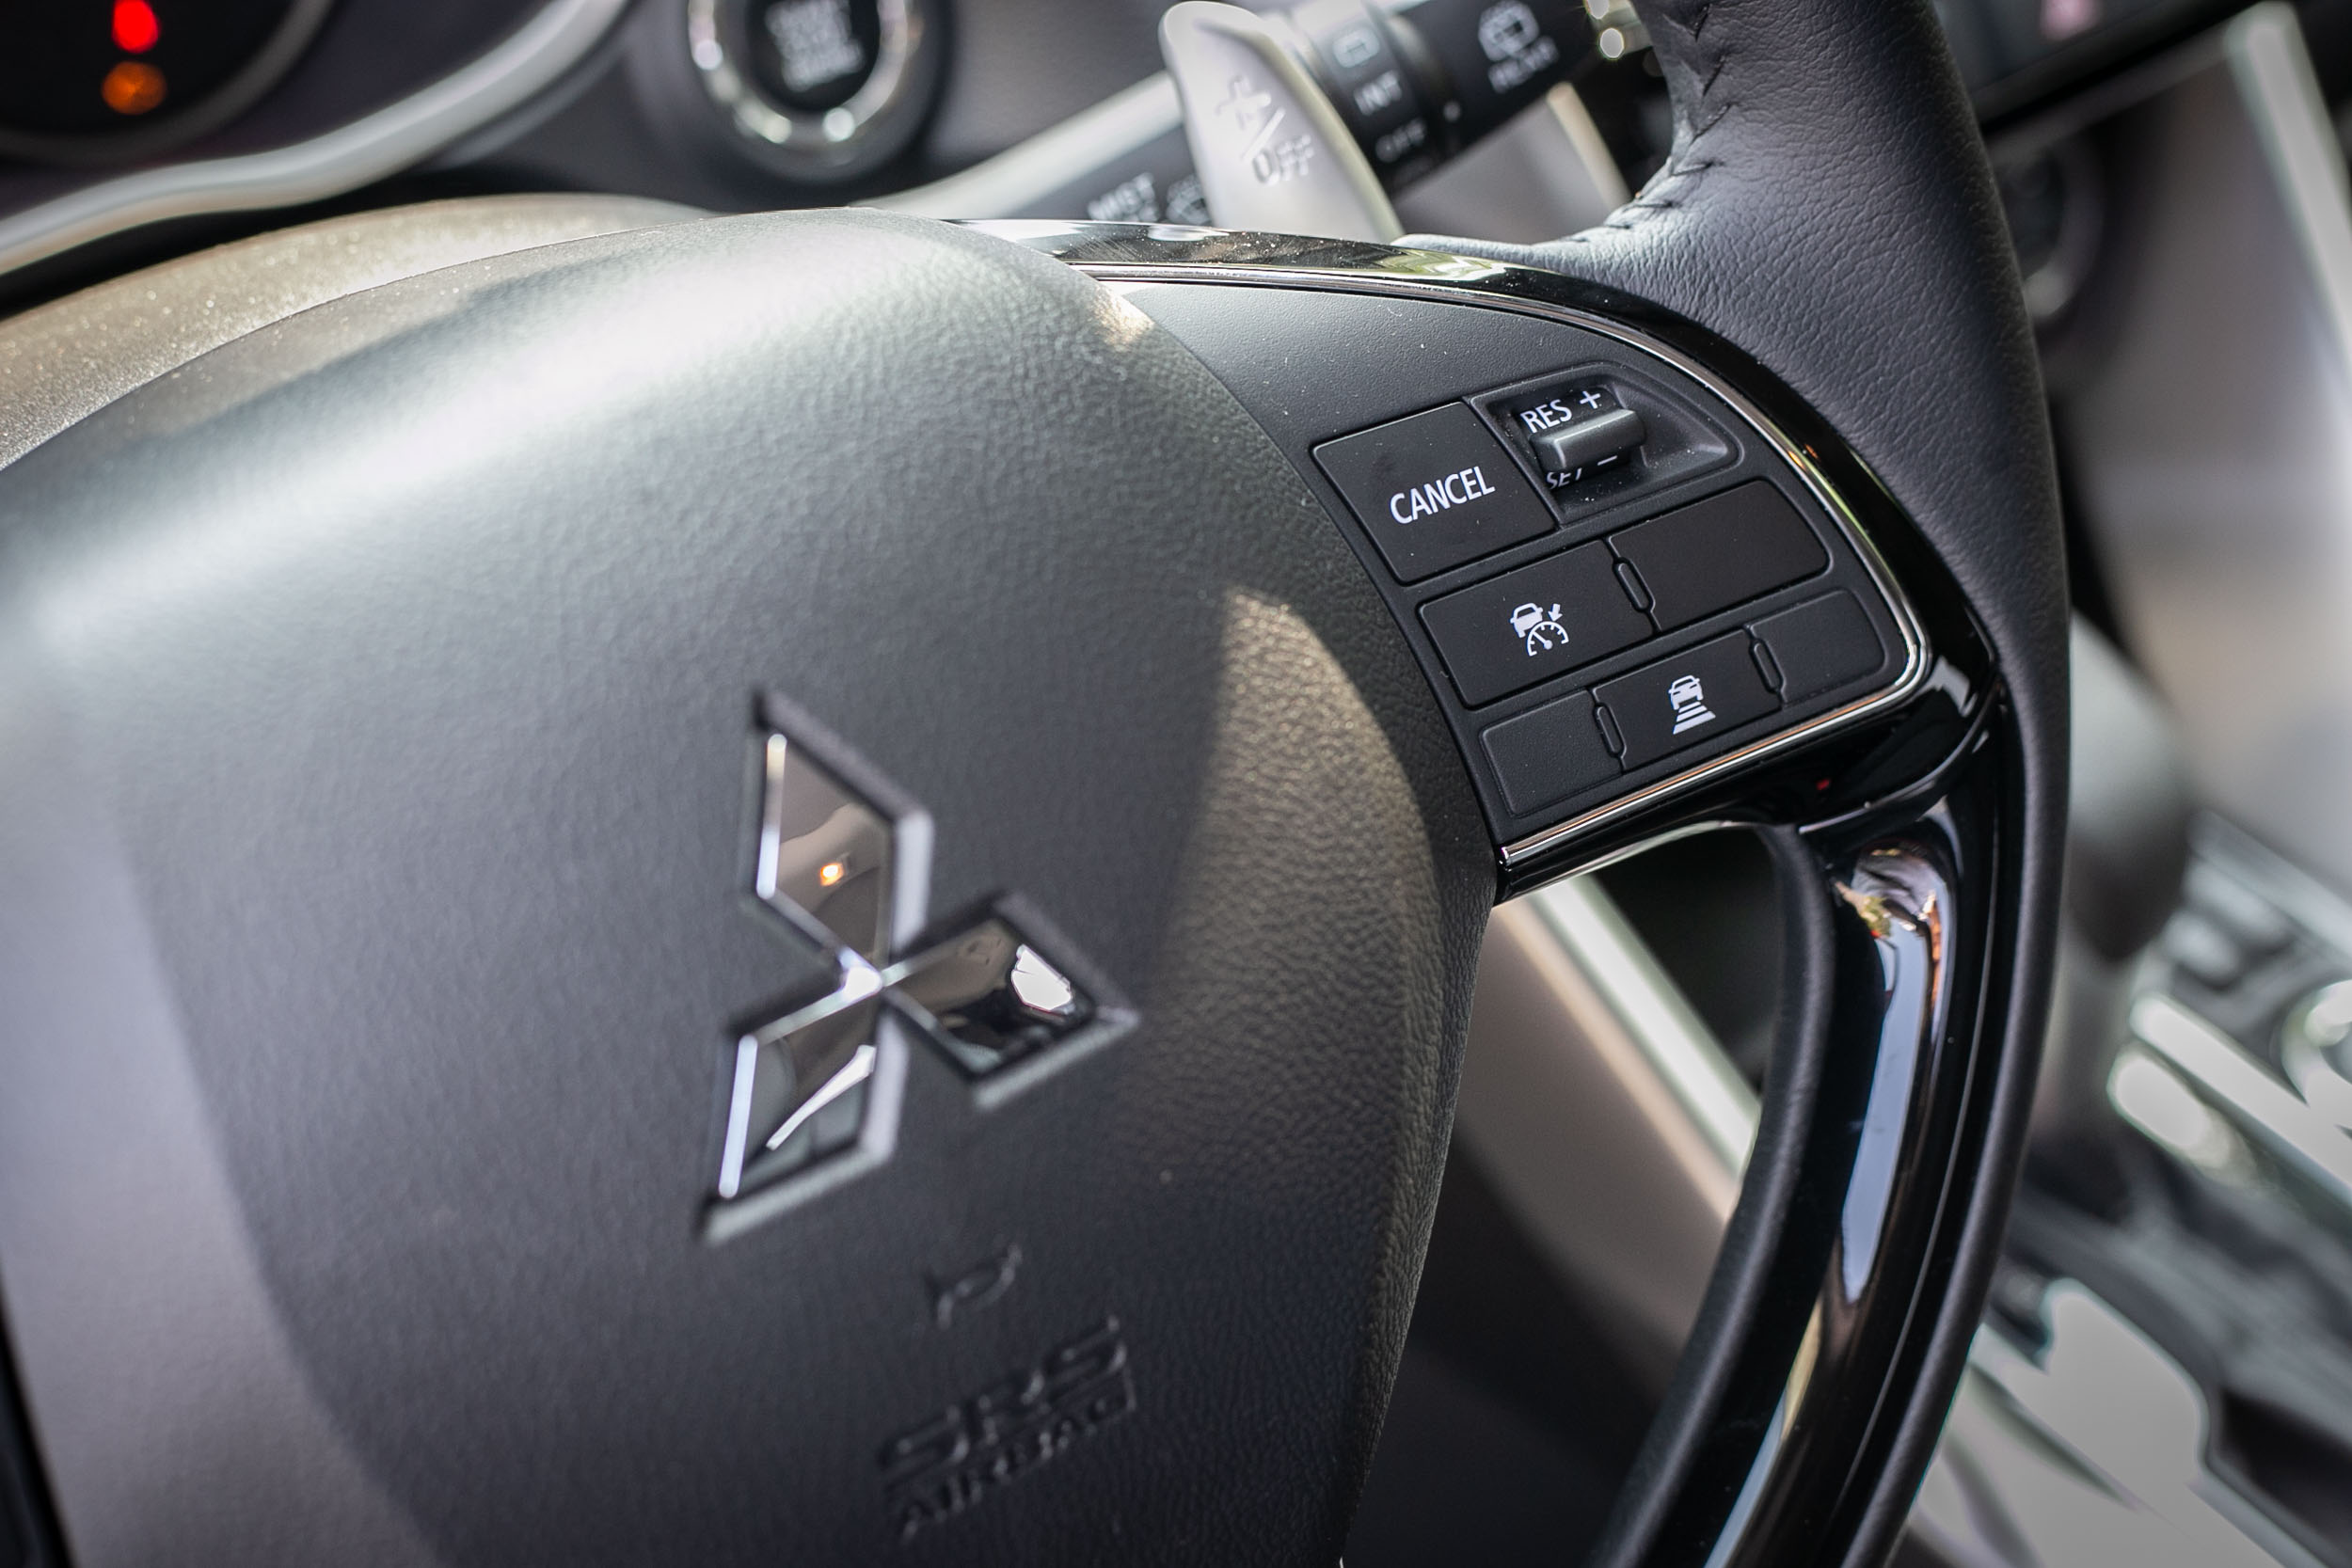 ACC 主動車距控制巡航系統操作介面設置於方向盤右側。